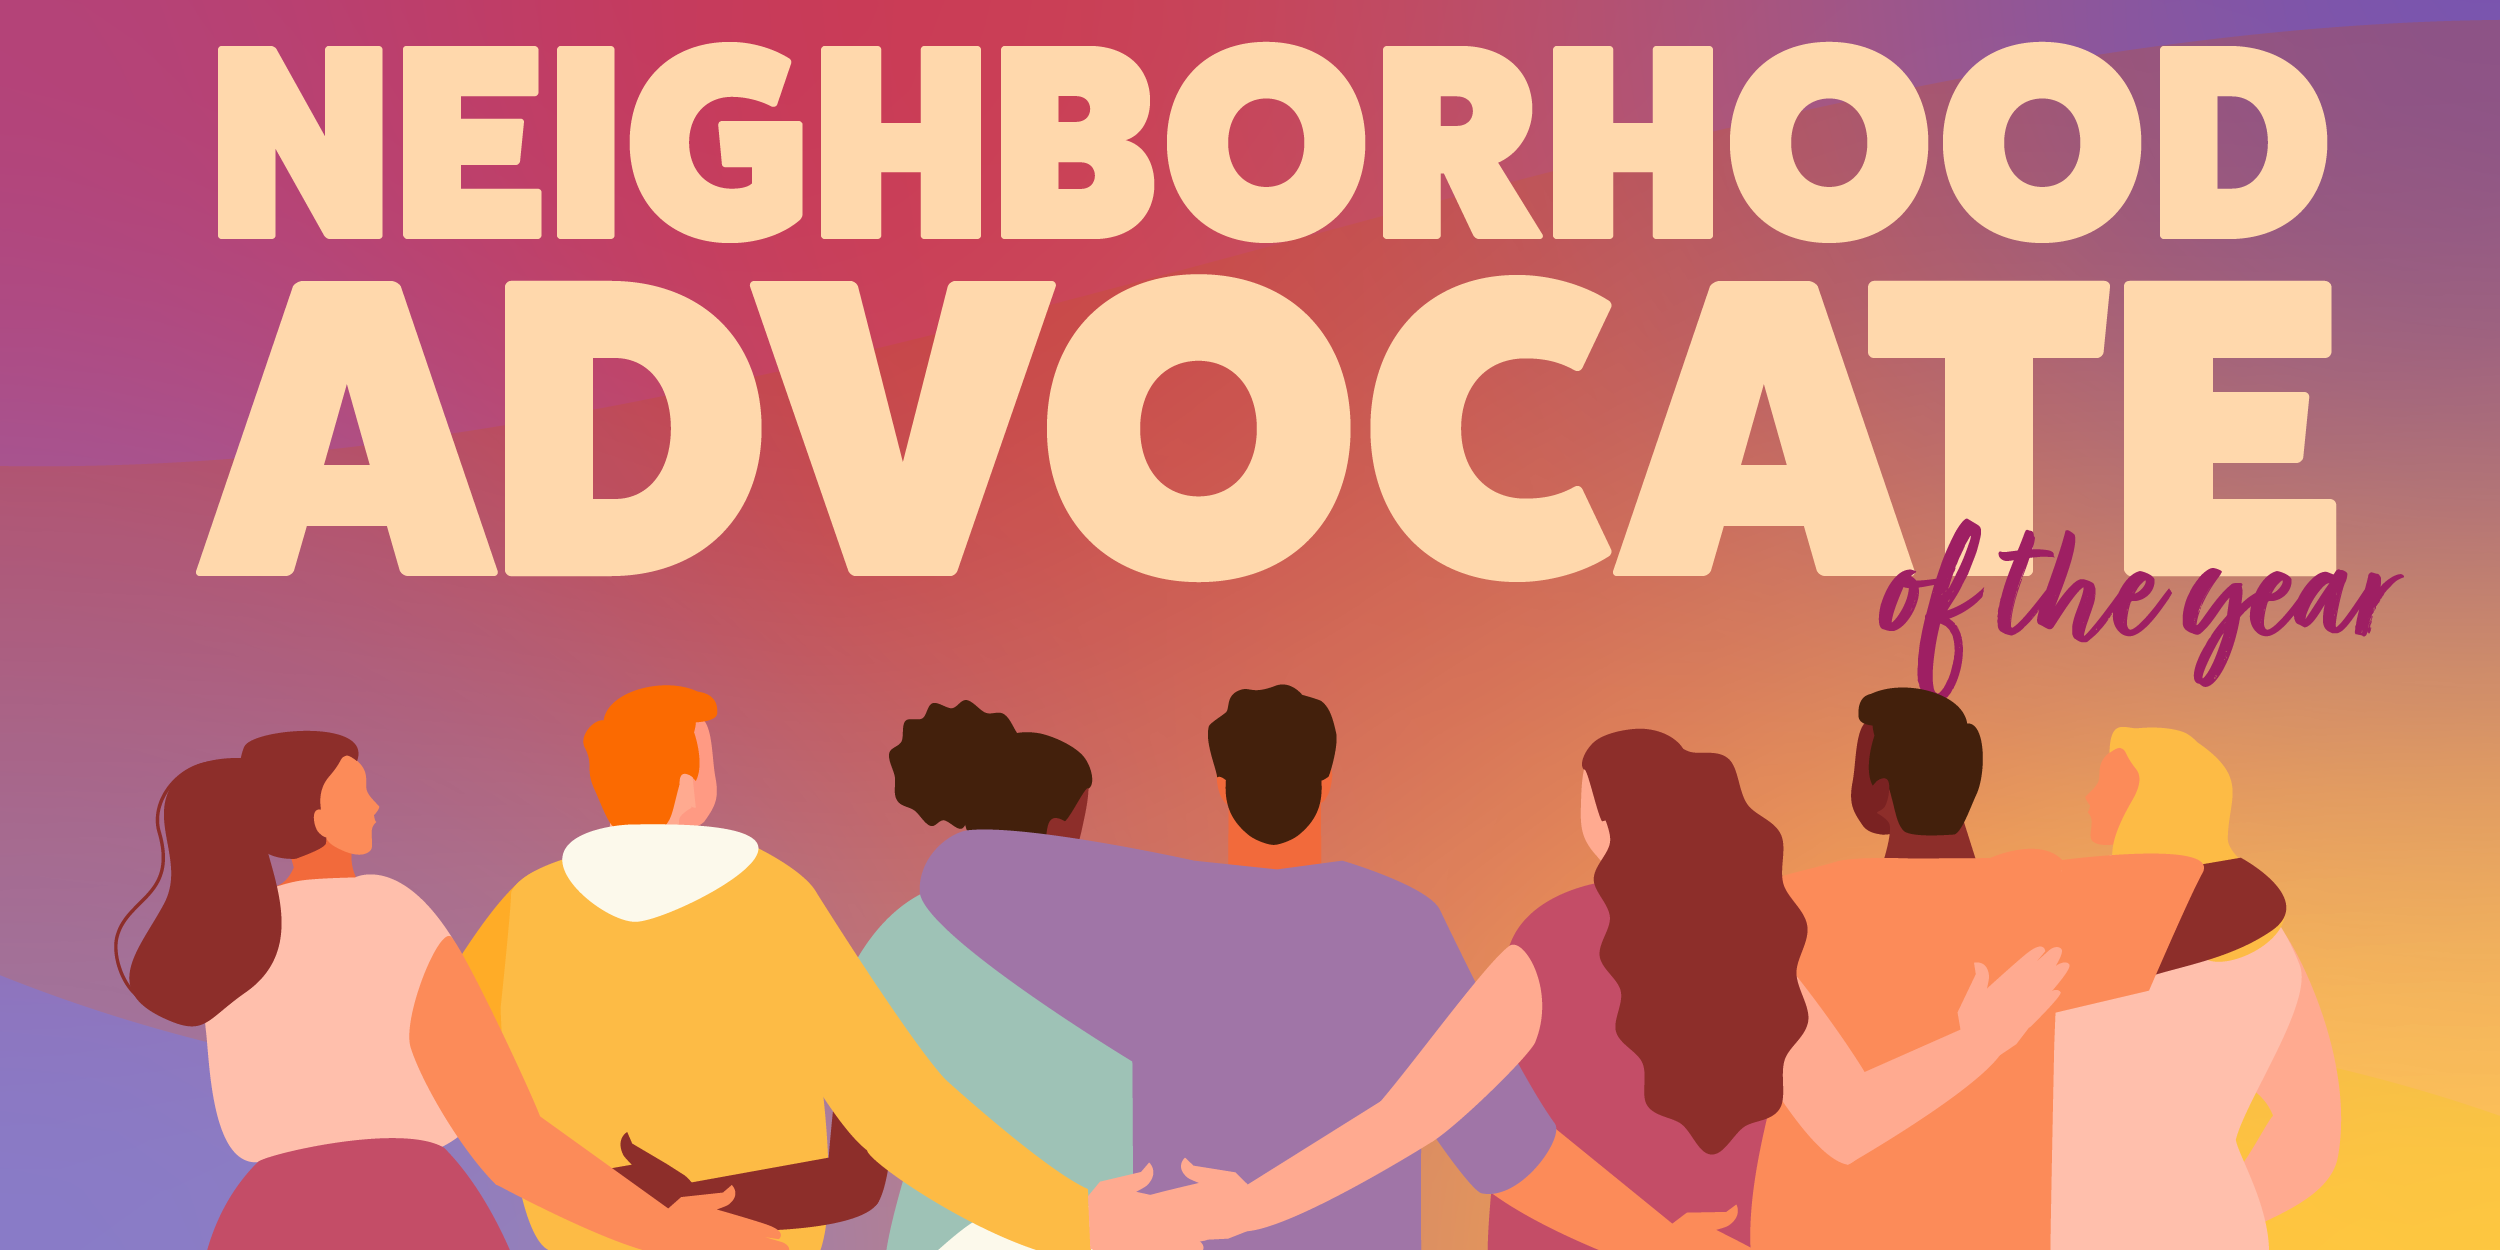 Neighborhood Advocate of the Year - illustration of neighbors embracing